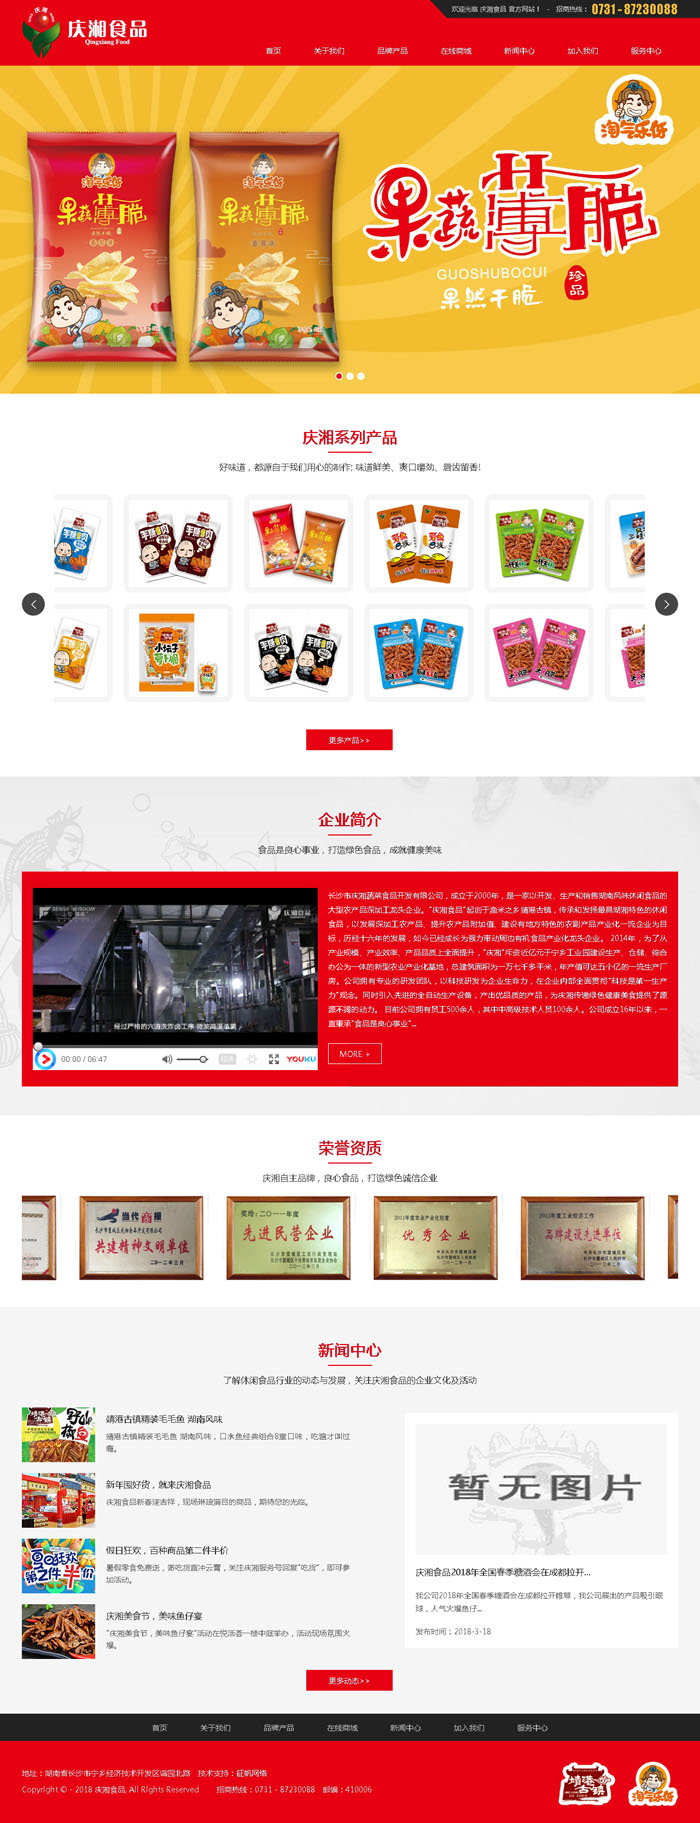 南昌市庆湘蔬菜食品开发有限公司网站设计效果图